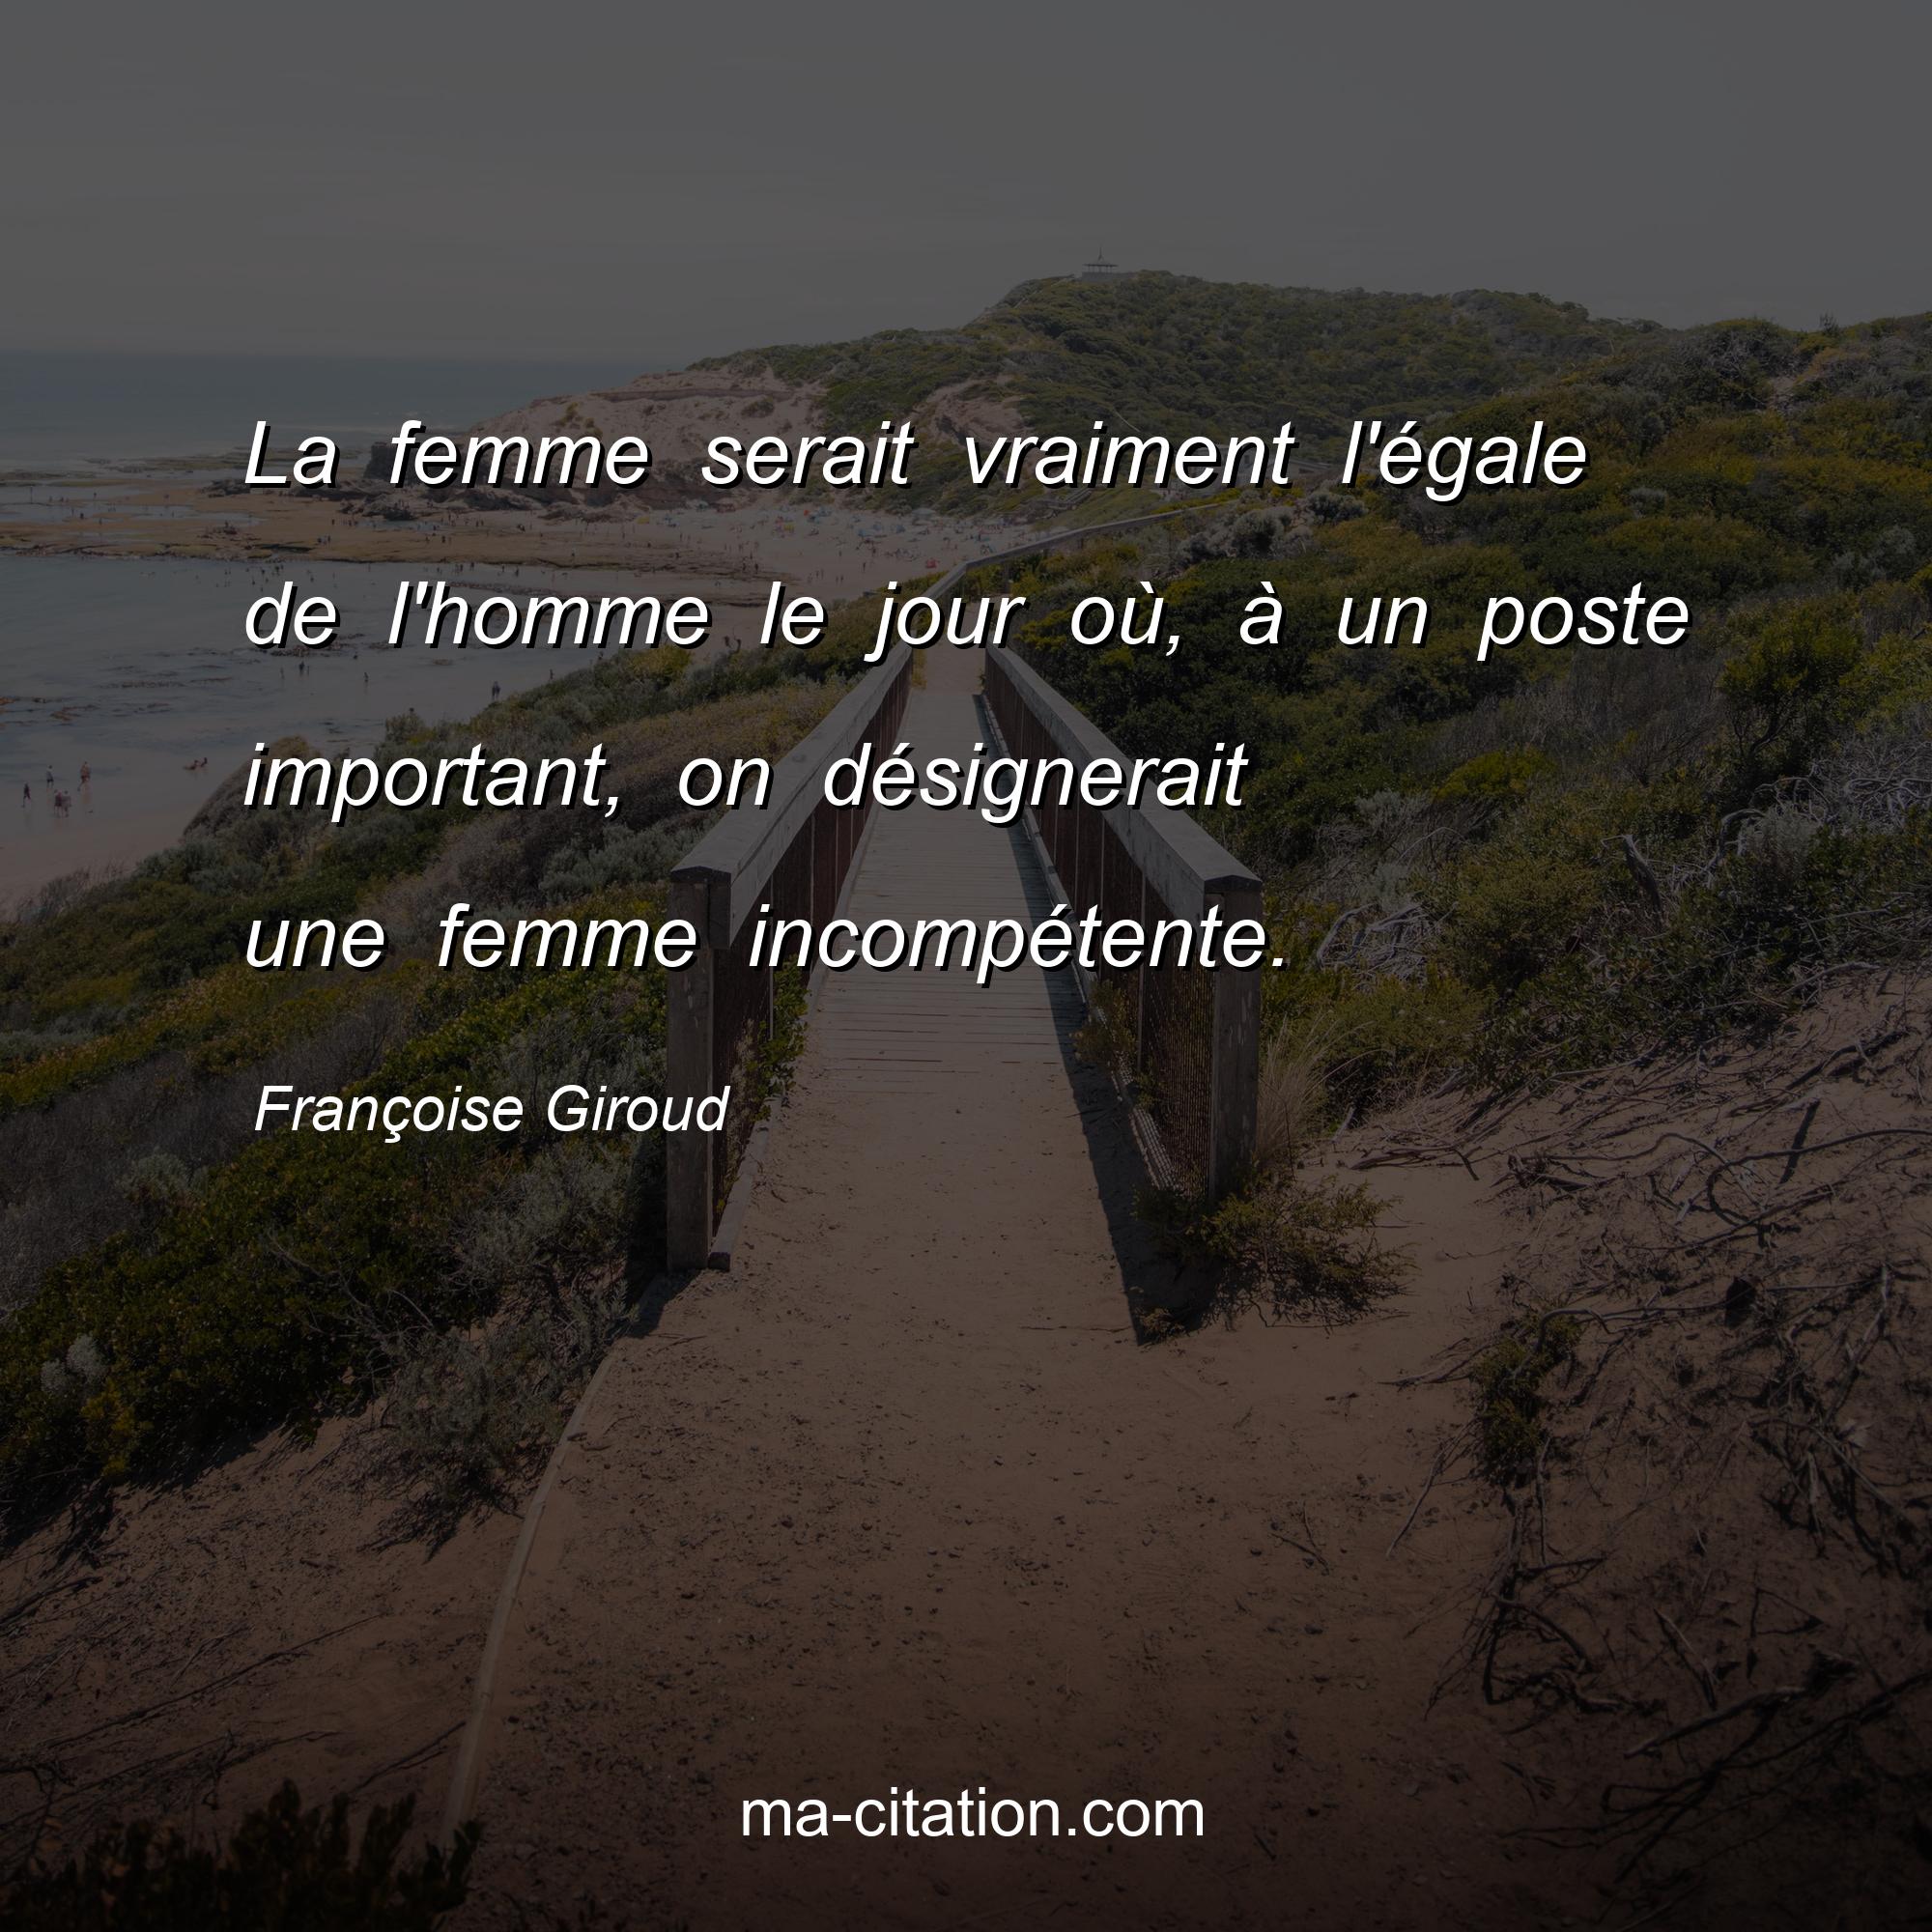 Françoise Giroud : La femme serait vraiment l'égale de l'homme le jour où, à un poste important, on désignerait une femme incompétente.